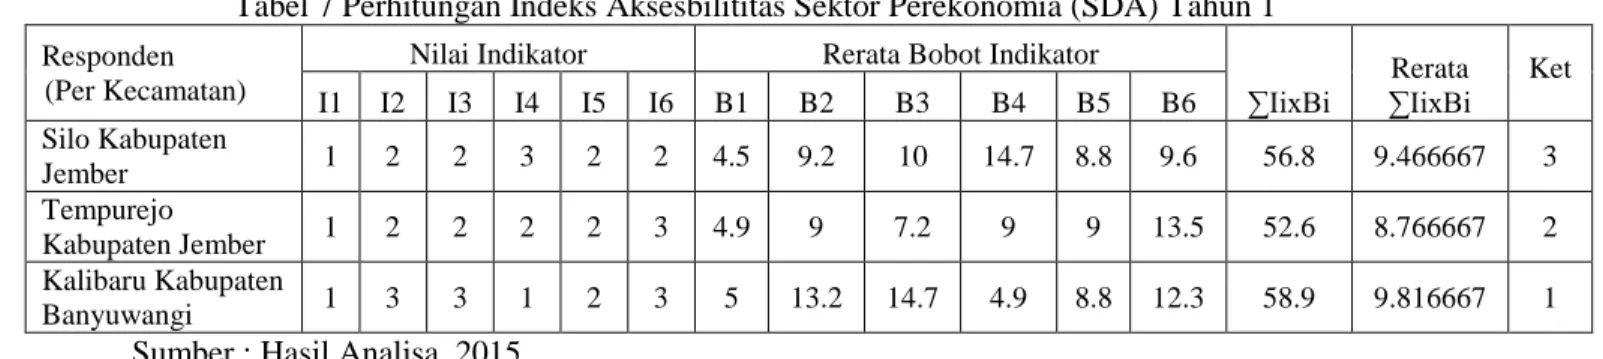 Tabel 7 Perhitungan Indeks Aksesbilititas Sektor Perekonomia (SDA) Tahun 1 